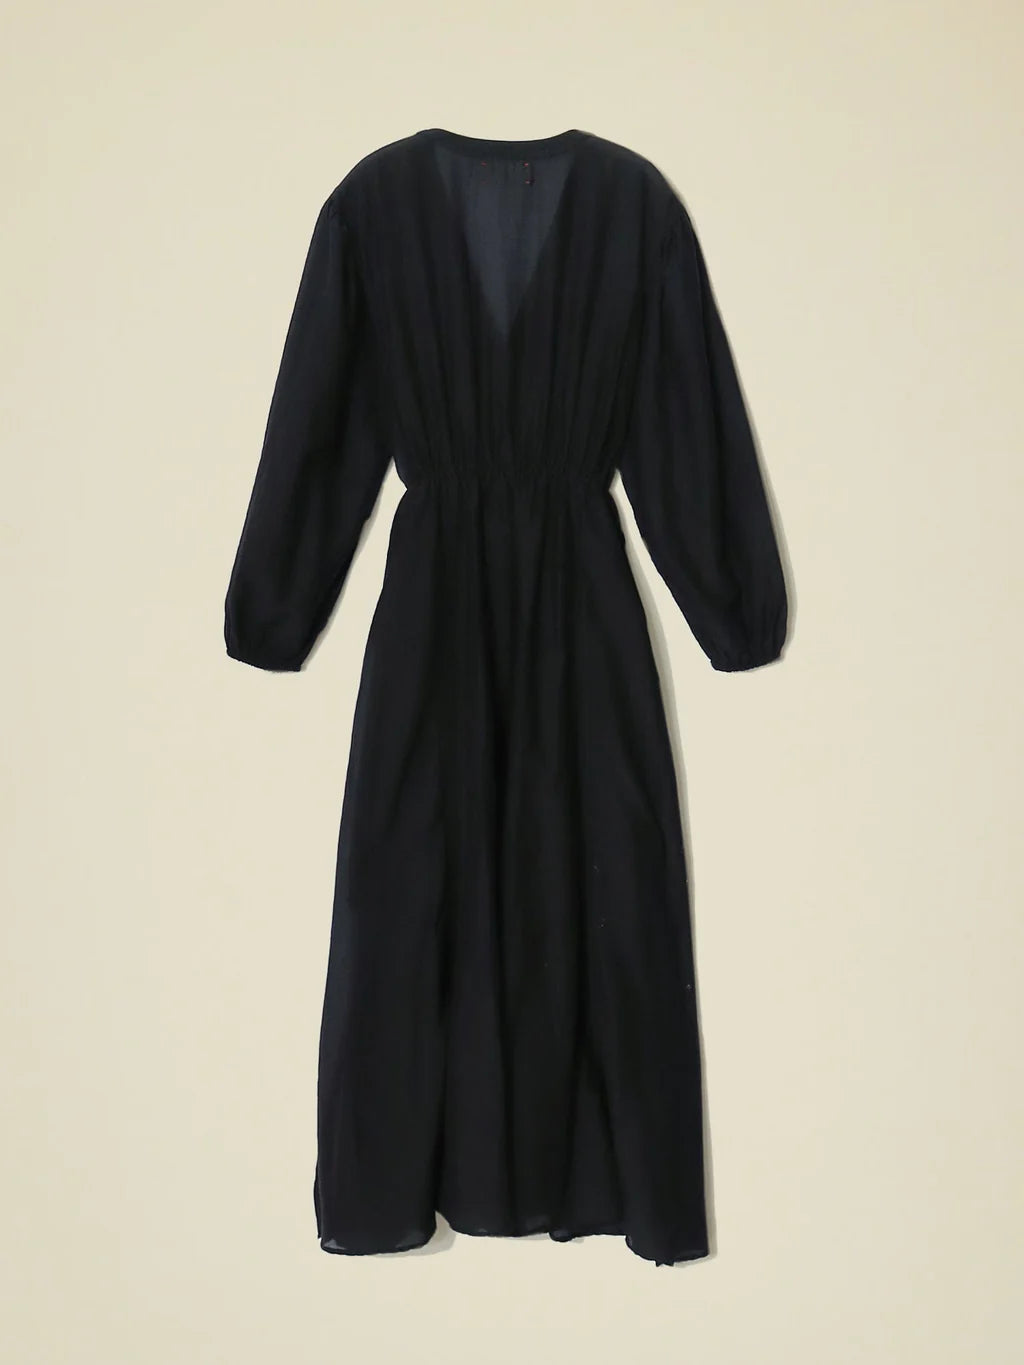 Hera Dress in Black